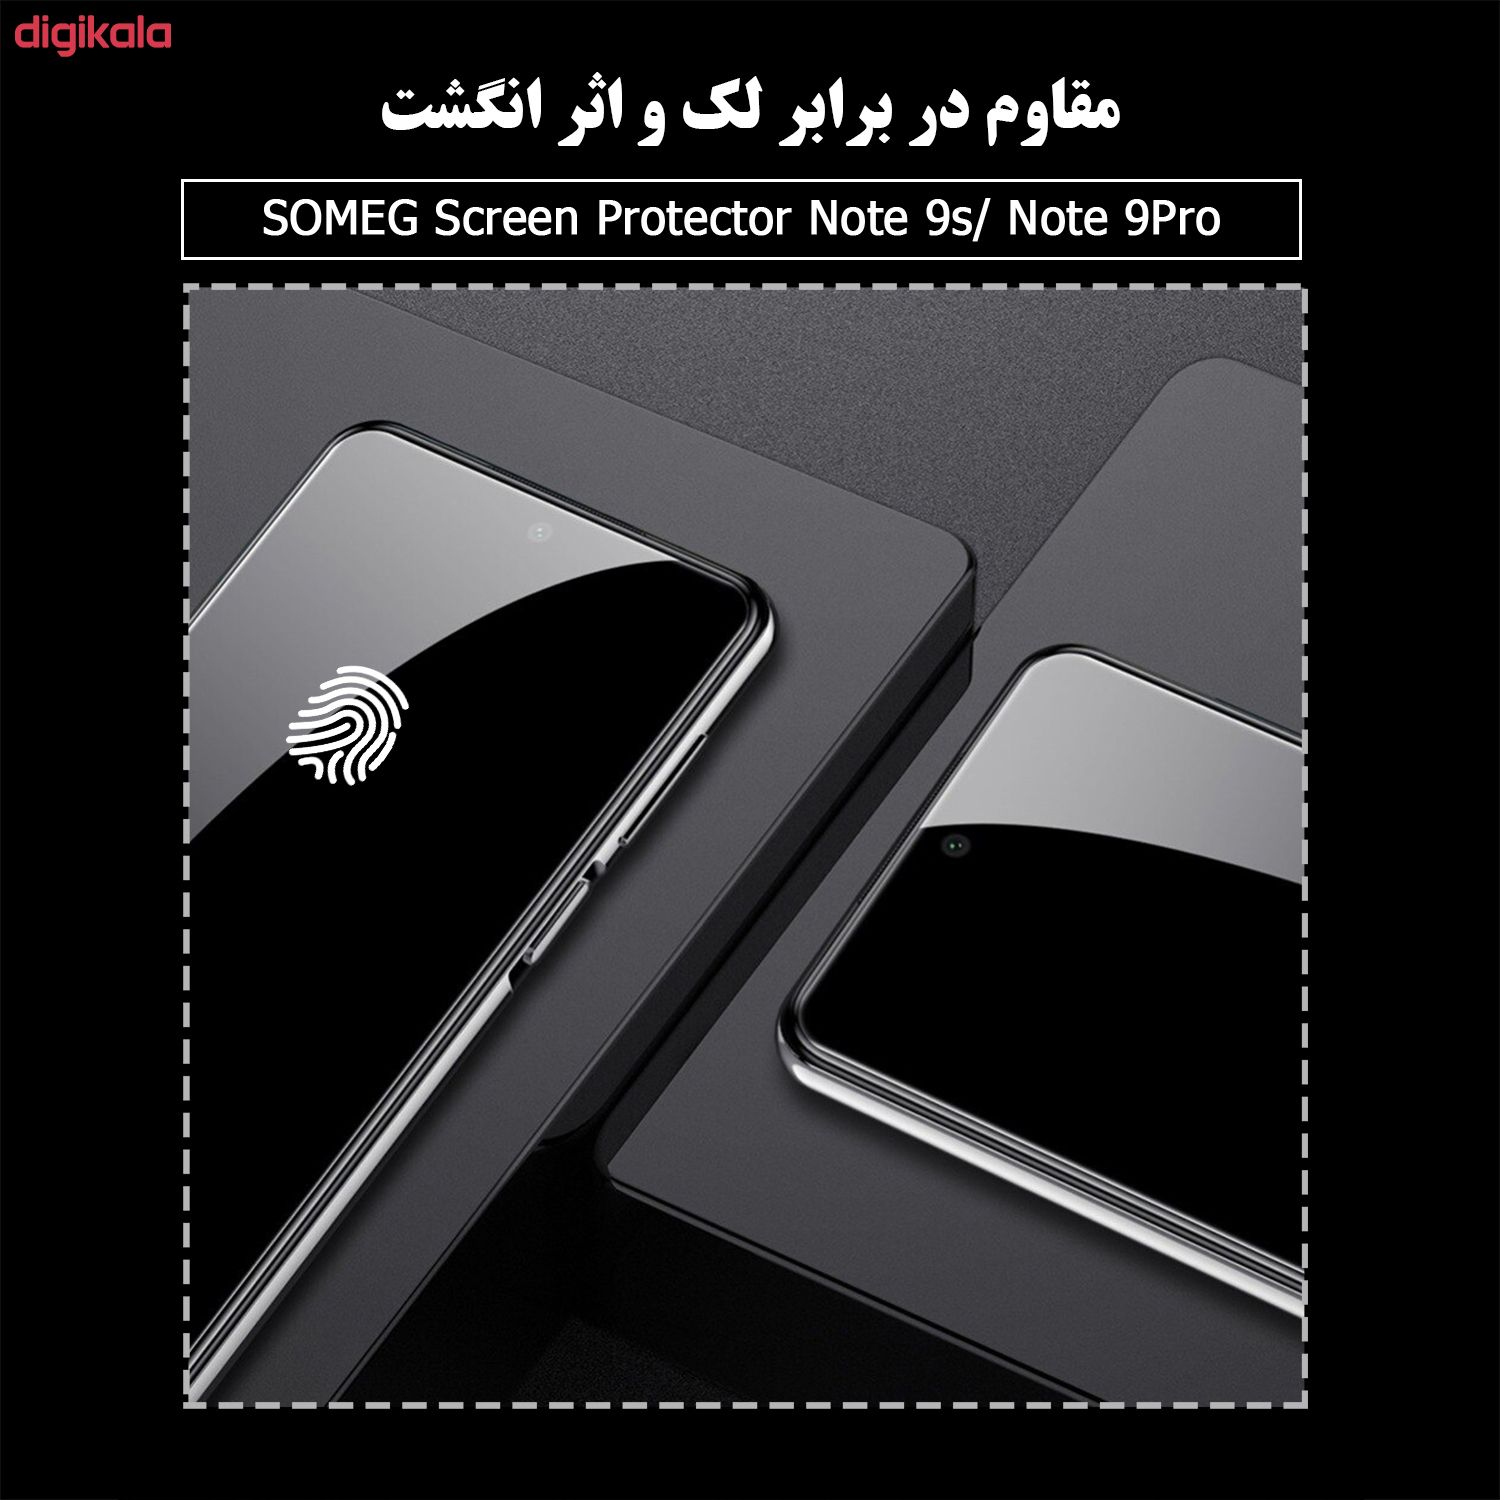 محافظ صفحه نمایش سومگ مدل SMG-Dual مناسب برای گوشی موبایل شیائومی Redmi Note 9S / Redmi Note 9 Pro به همراه محافظ لنز دوربین main 1 10